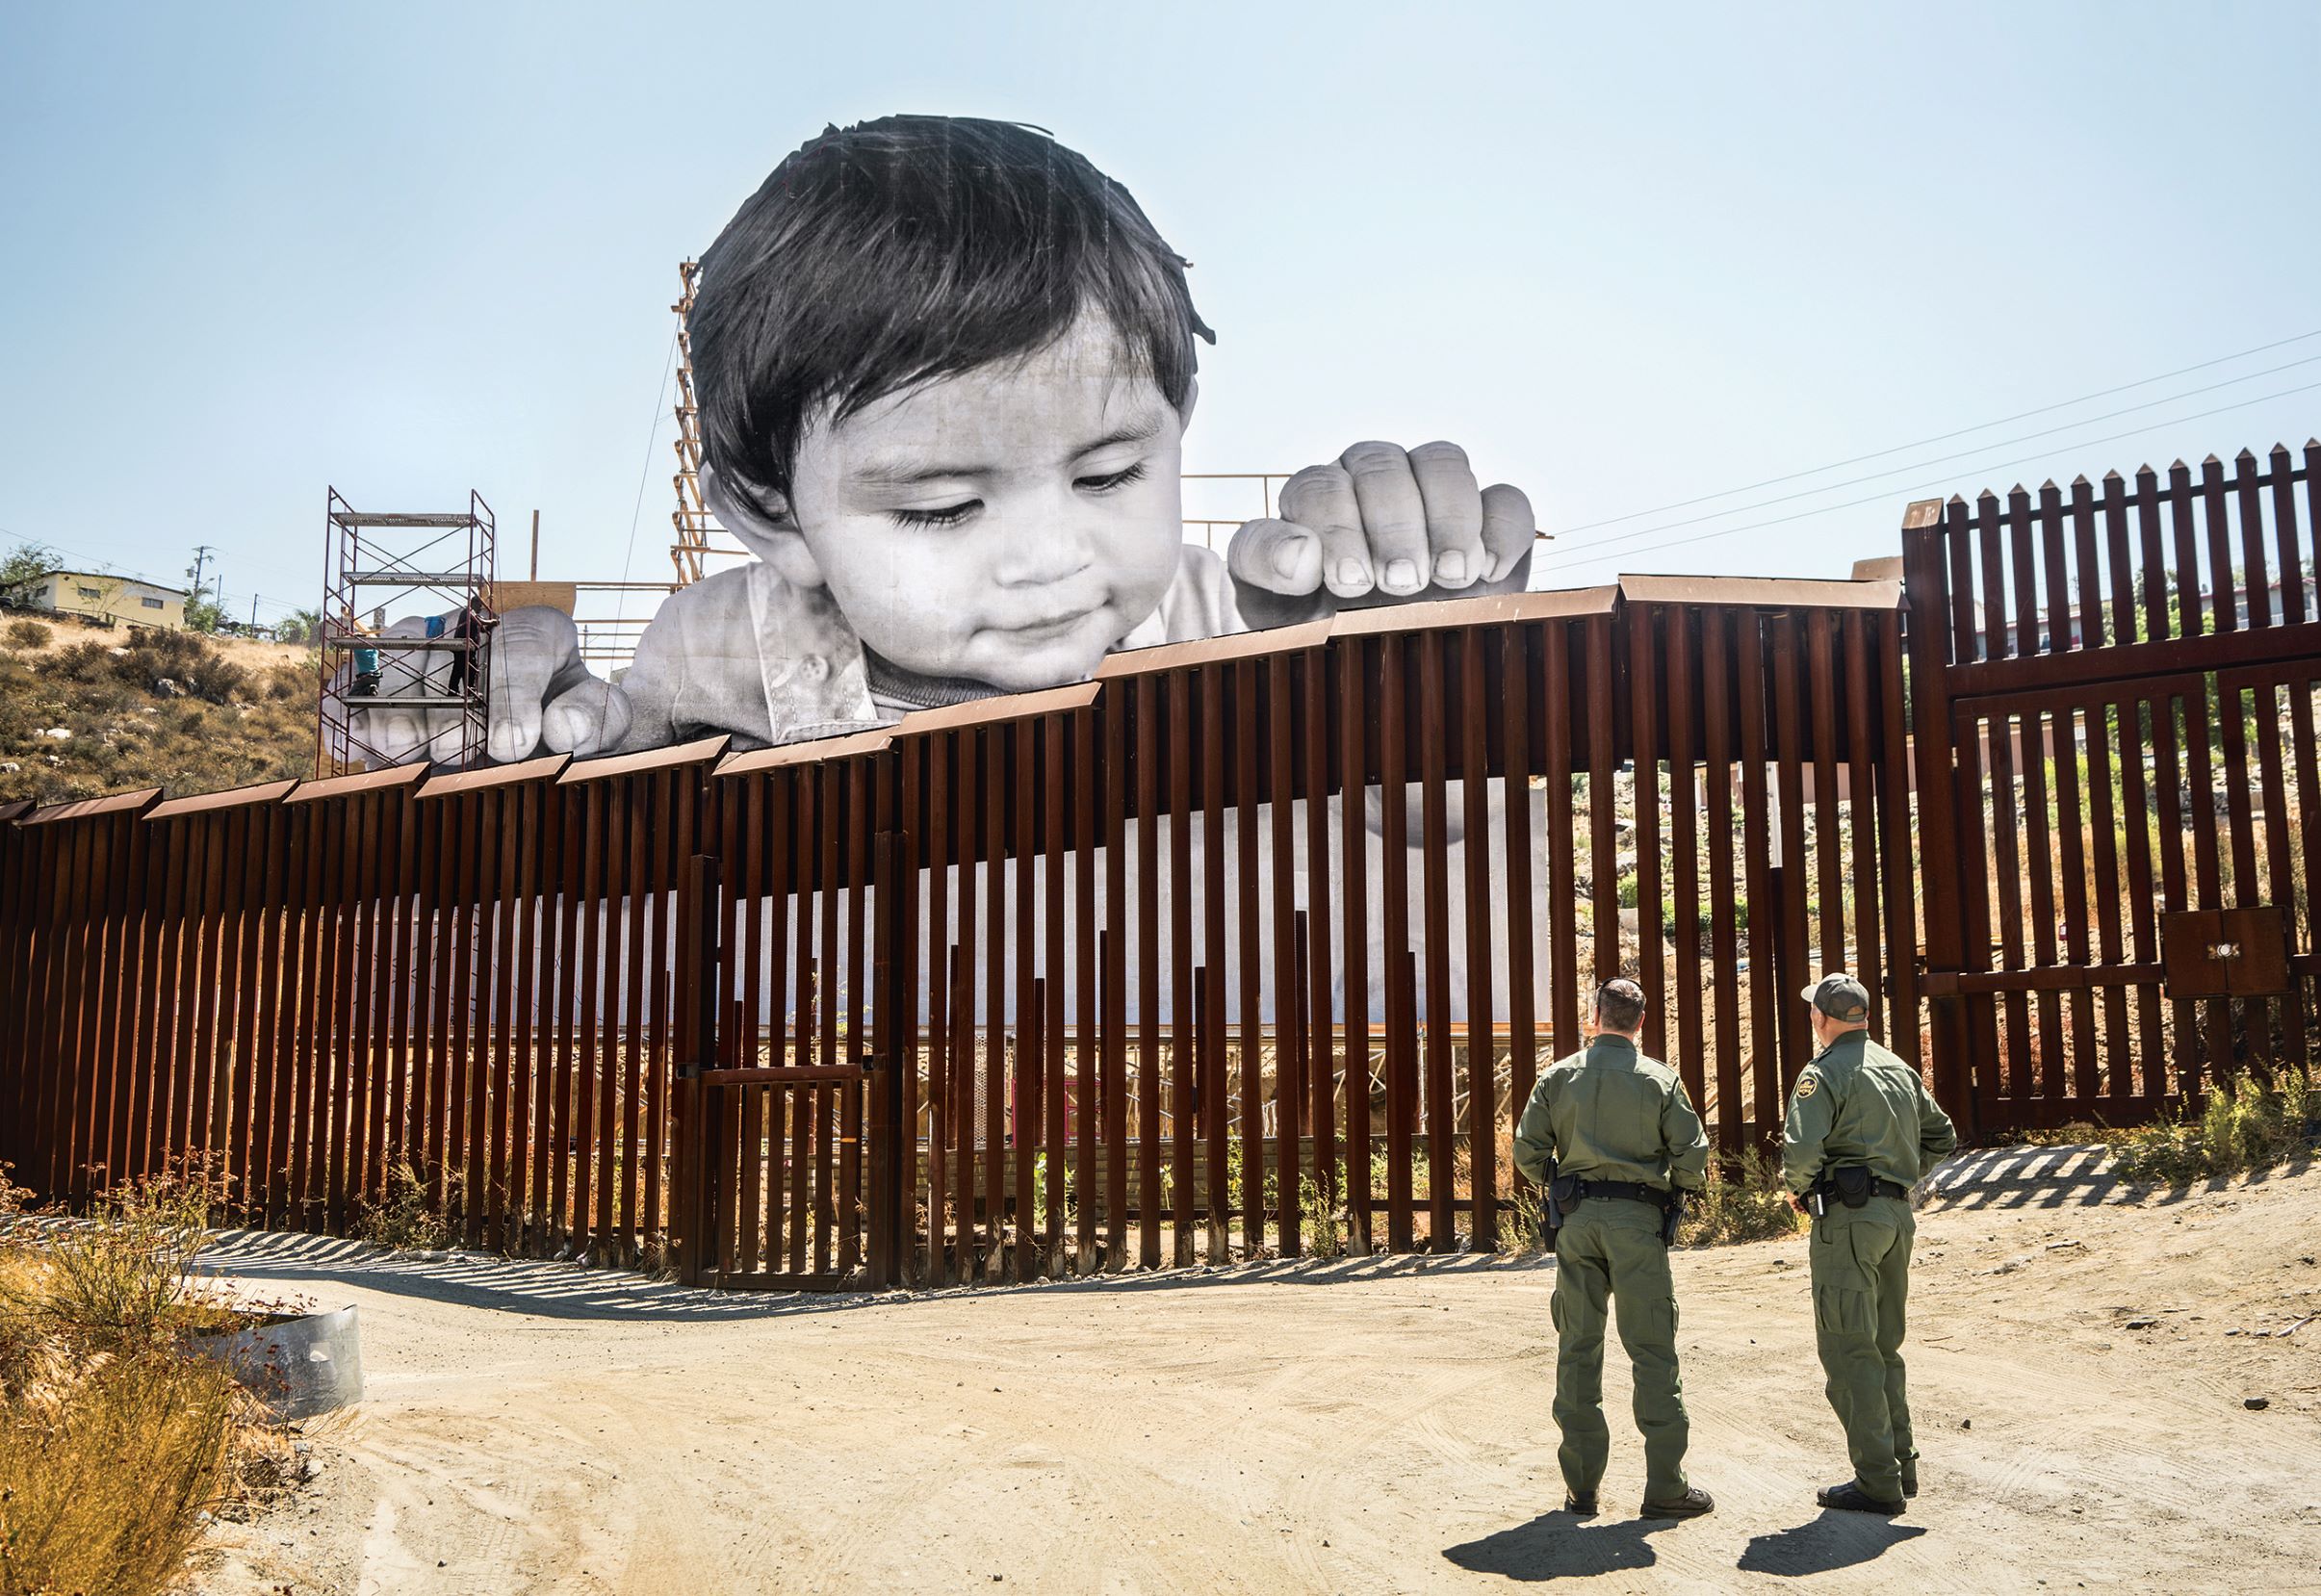 Kikito and the border patrol, Tecate, Mexico–USA border, 2017